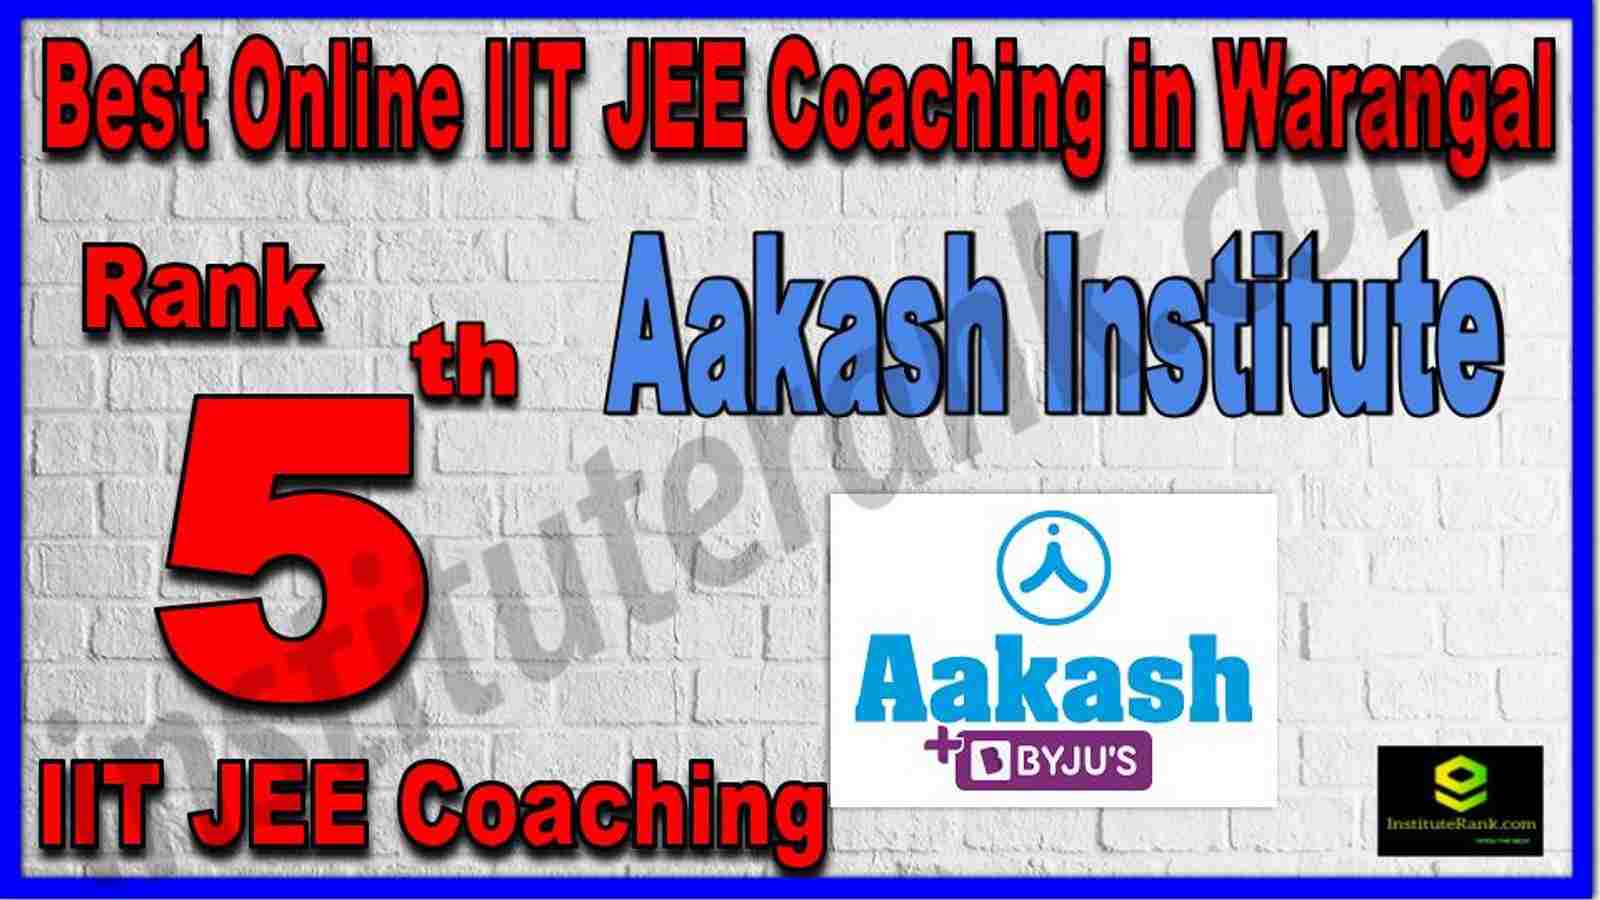 Rank 5th Best Online IIT JEE Coaching in Warangal